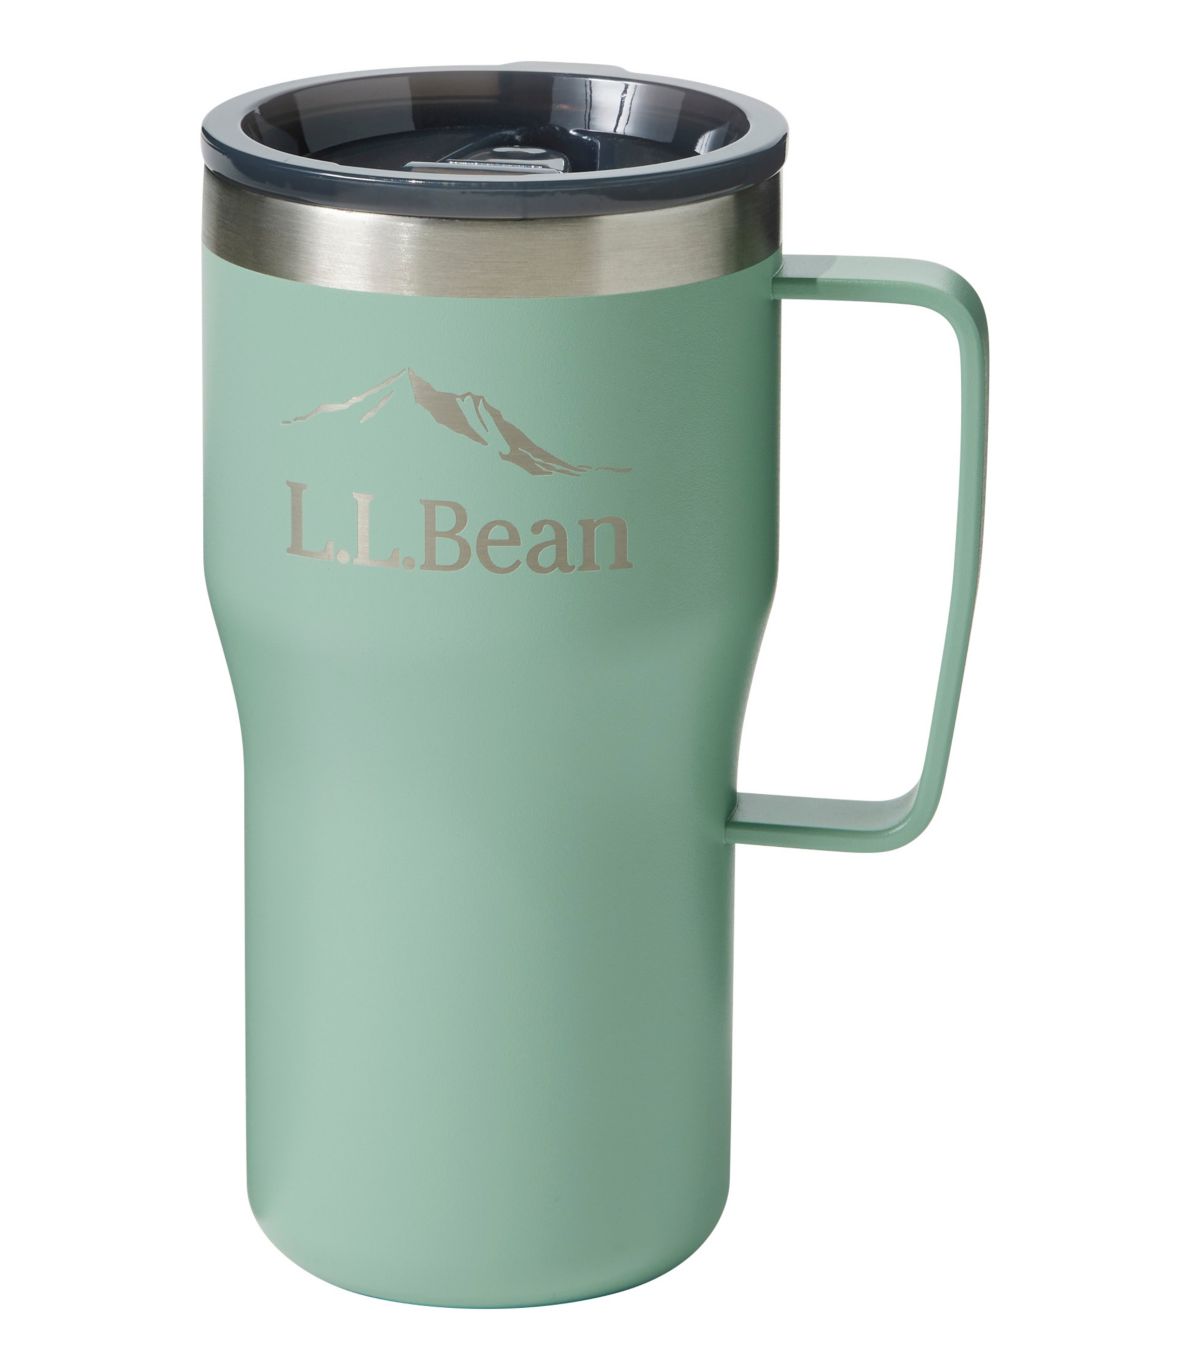 L.L.Bean Insulated XL Mug